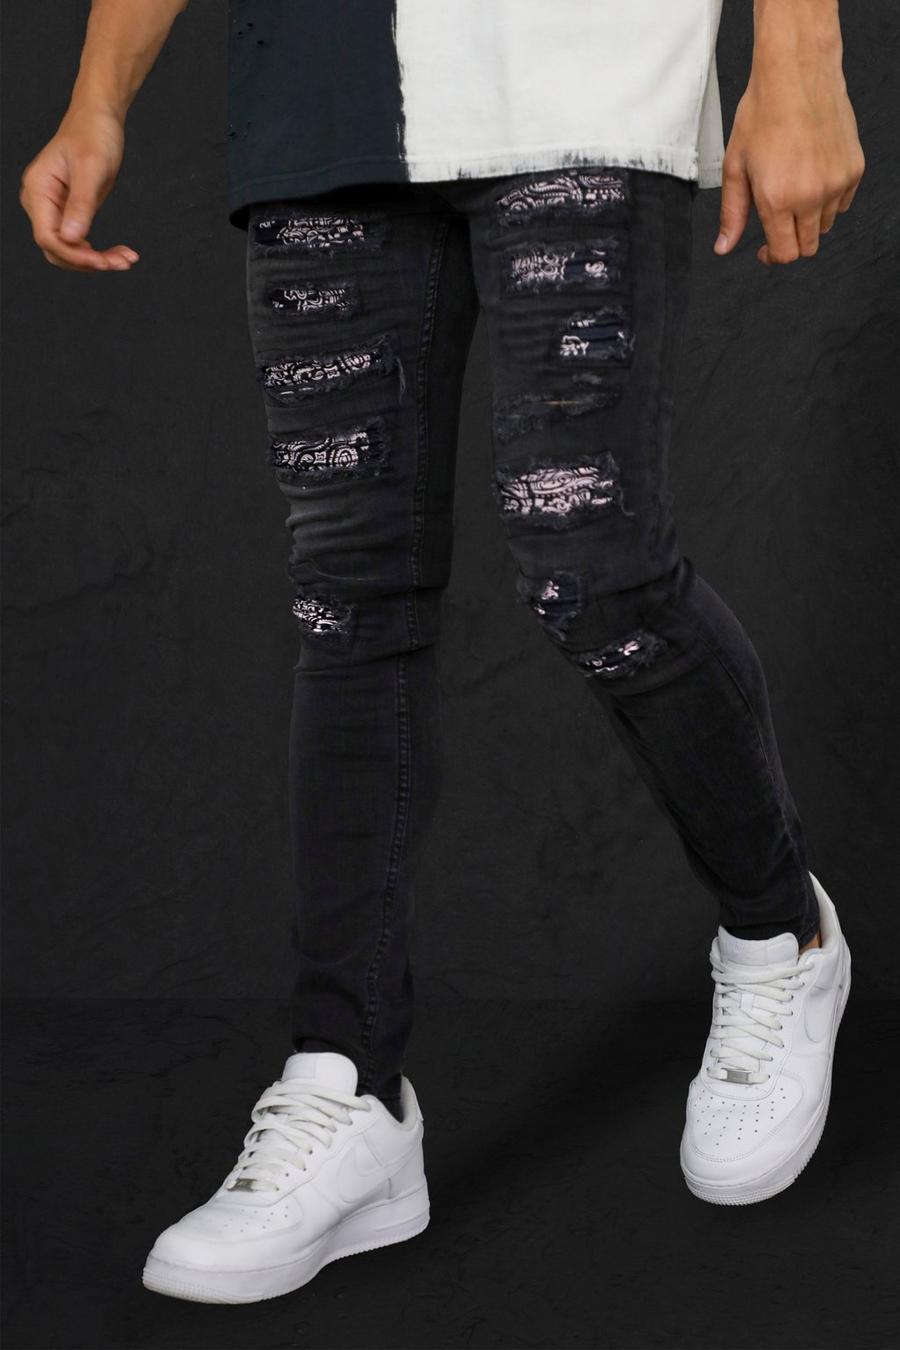 שחור דהוי סקיני ג'ינס אופנוענים עם קרעים וטלאים בהדפס בנדנה